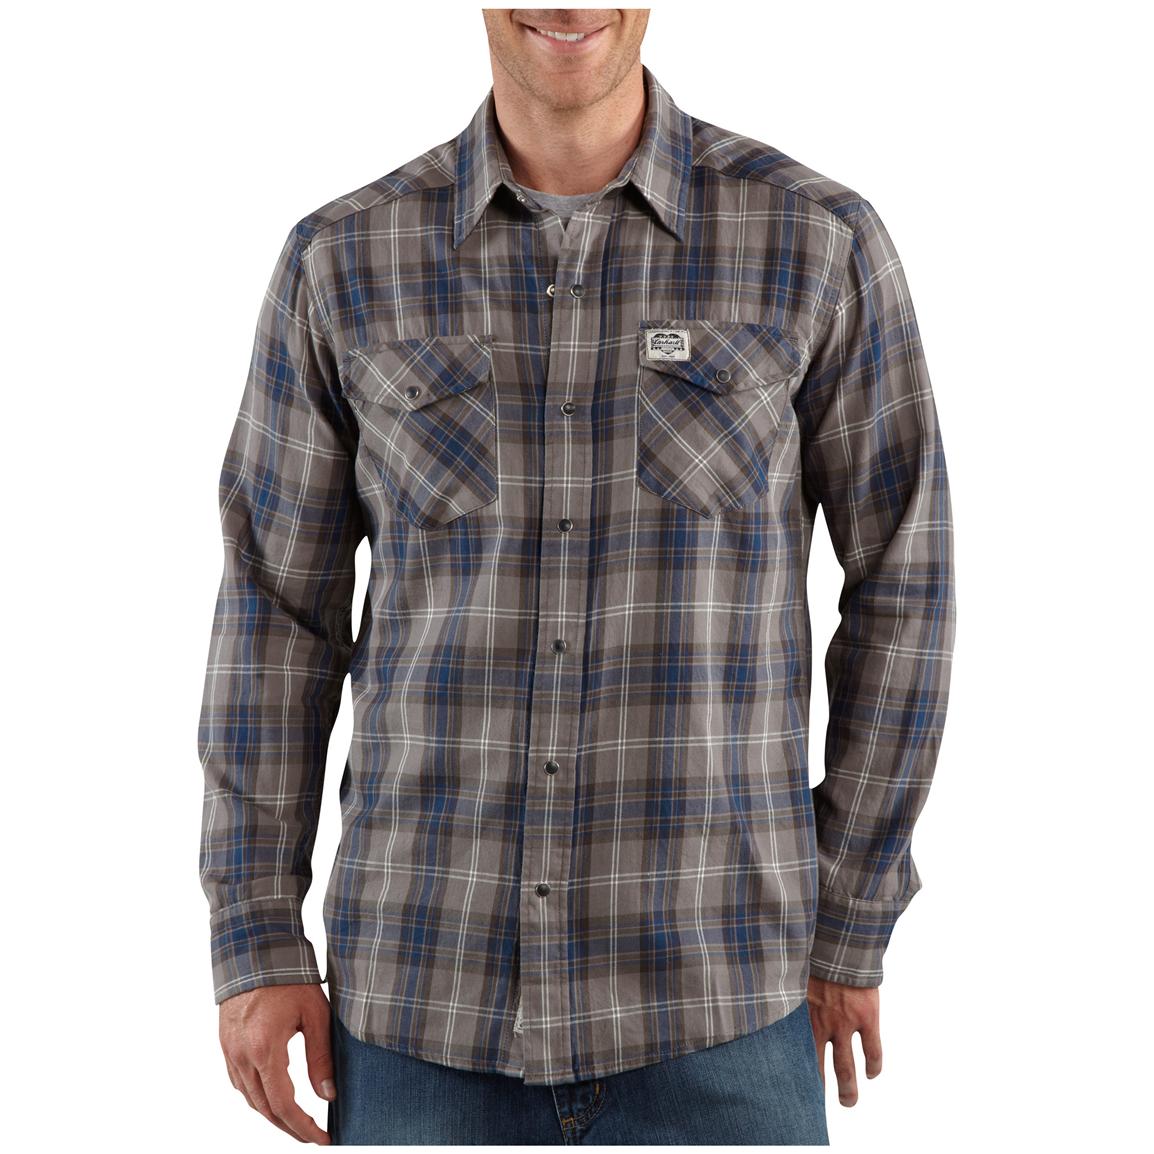 Mens Carhartt® Long Sleeve Cotton Shirt 227105 Shirts At